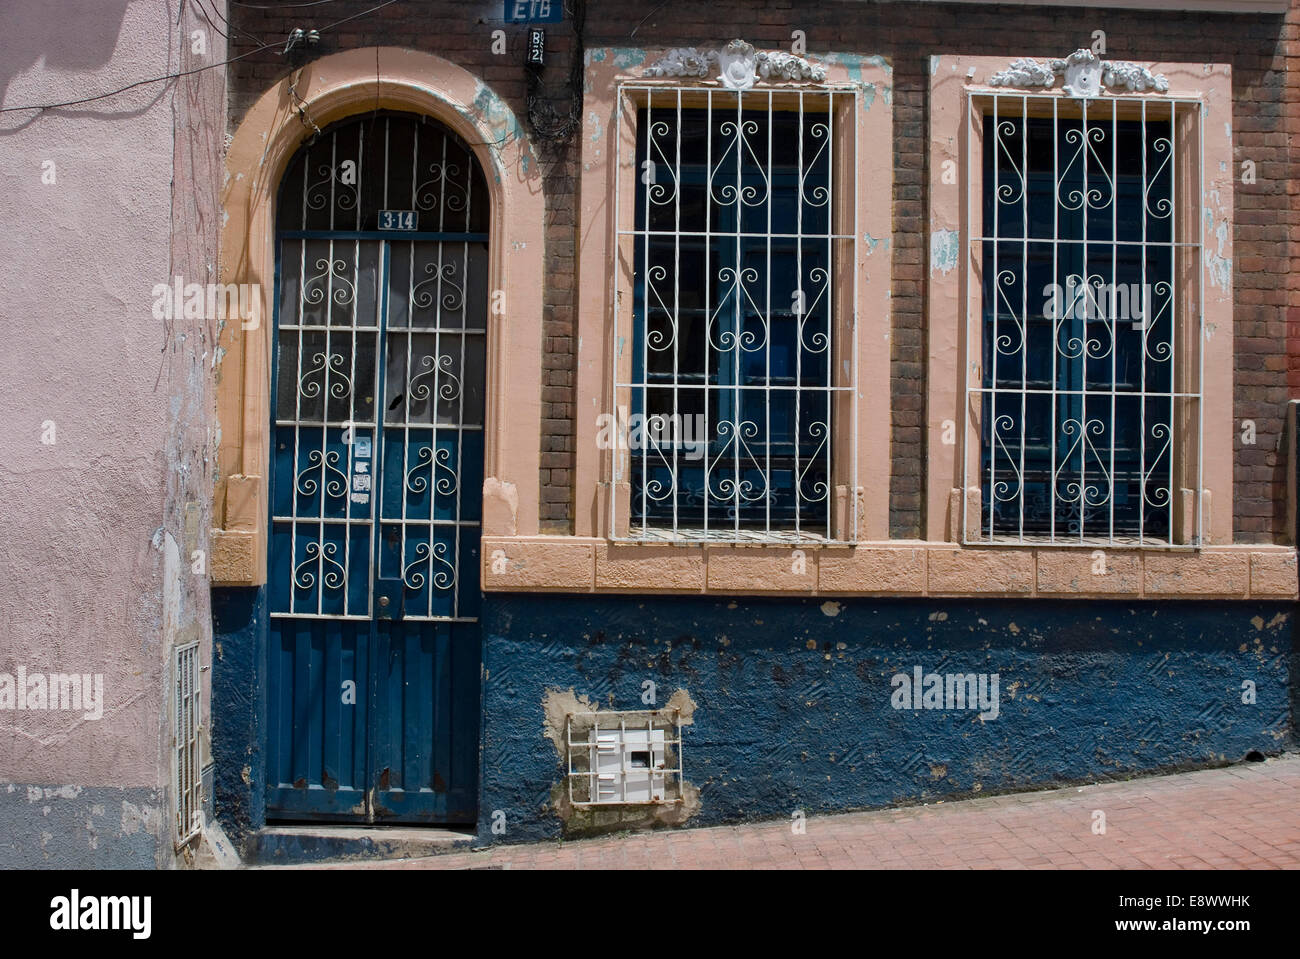 Porte et fenêtre avec grille dans la Candelaria (ancienne partie de la ville), Bogota, Colombie Banque D'Images